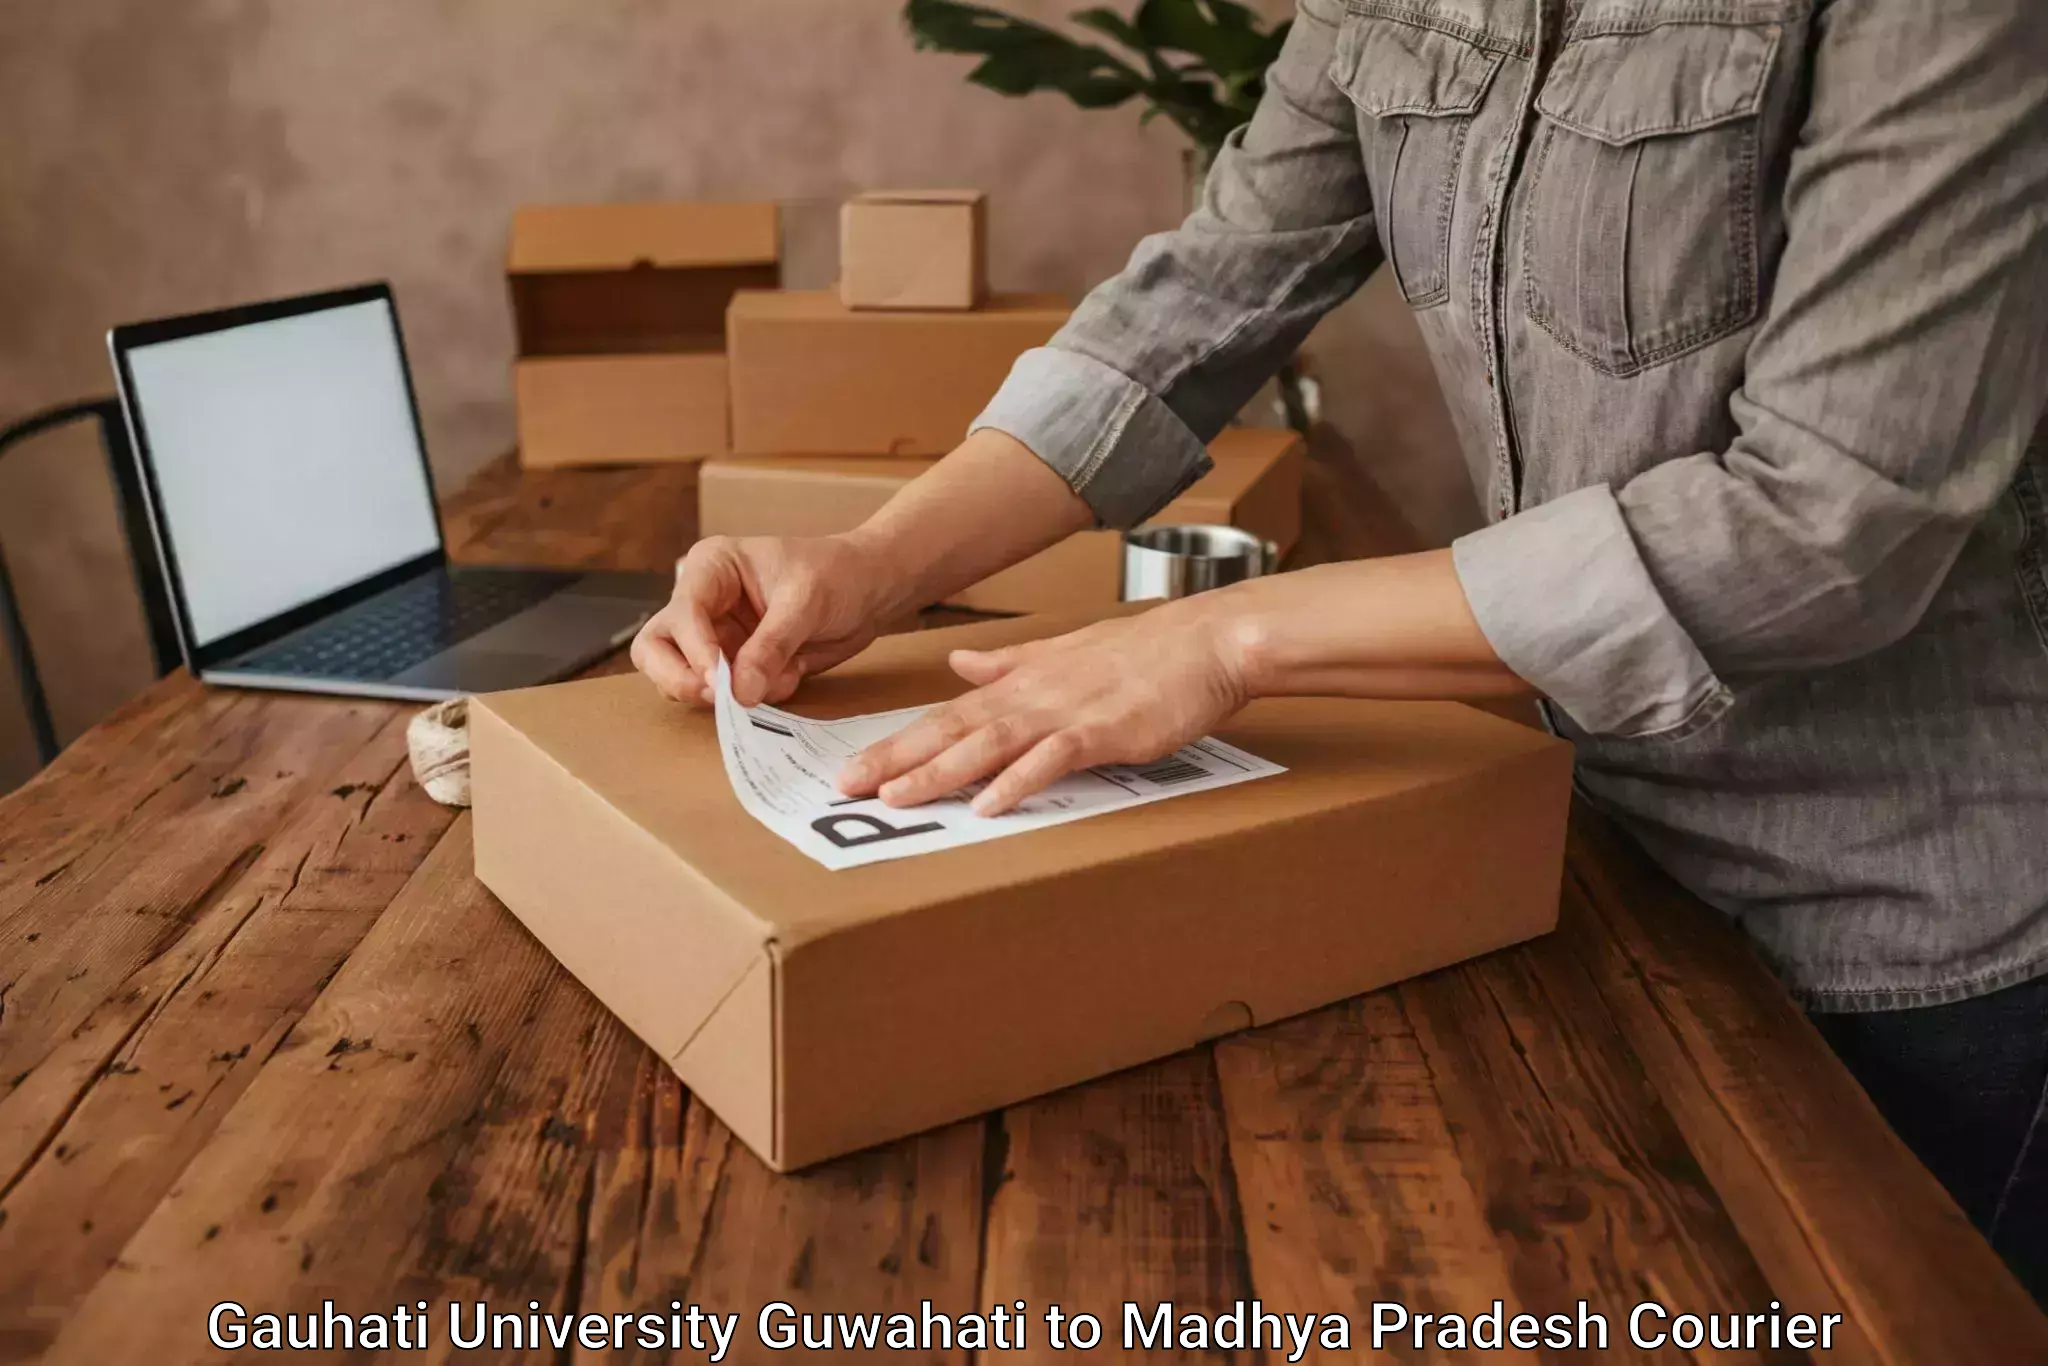 Modern delivery technologies Gauhati University Guwahati to Madhya Pradesh